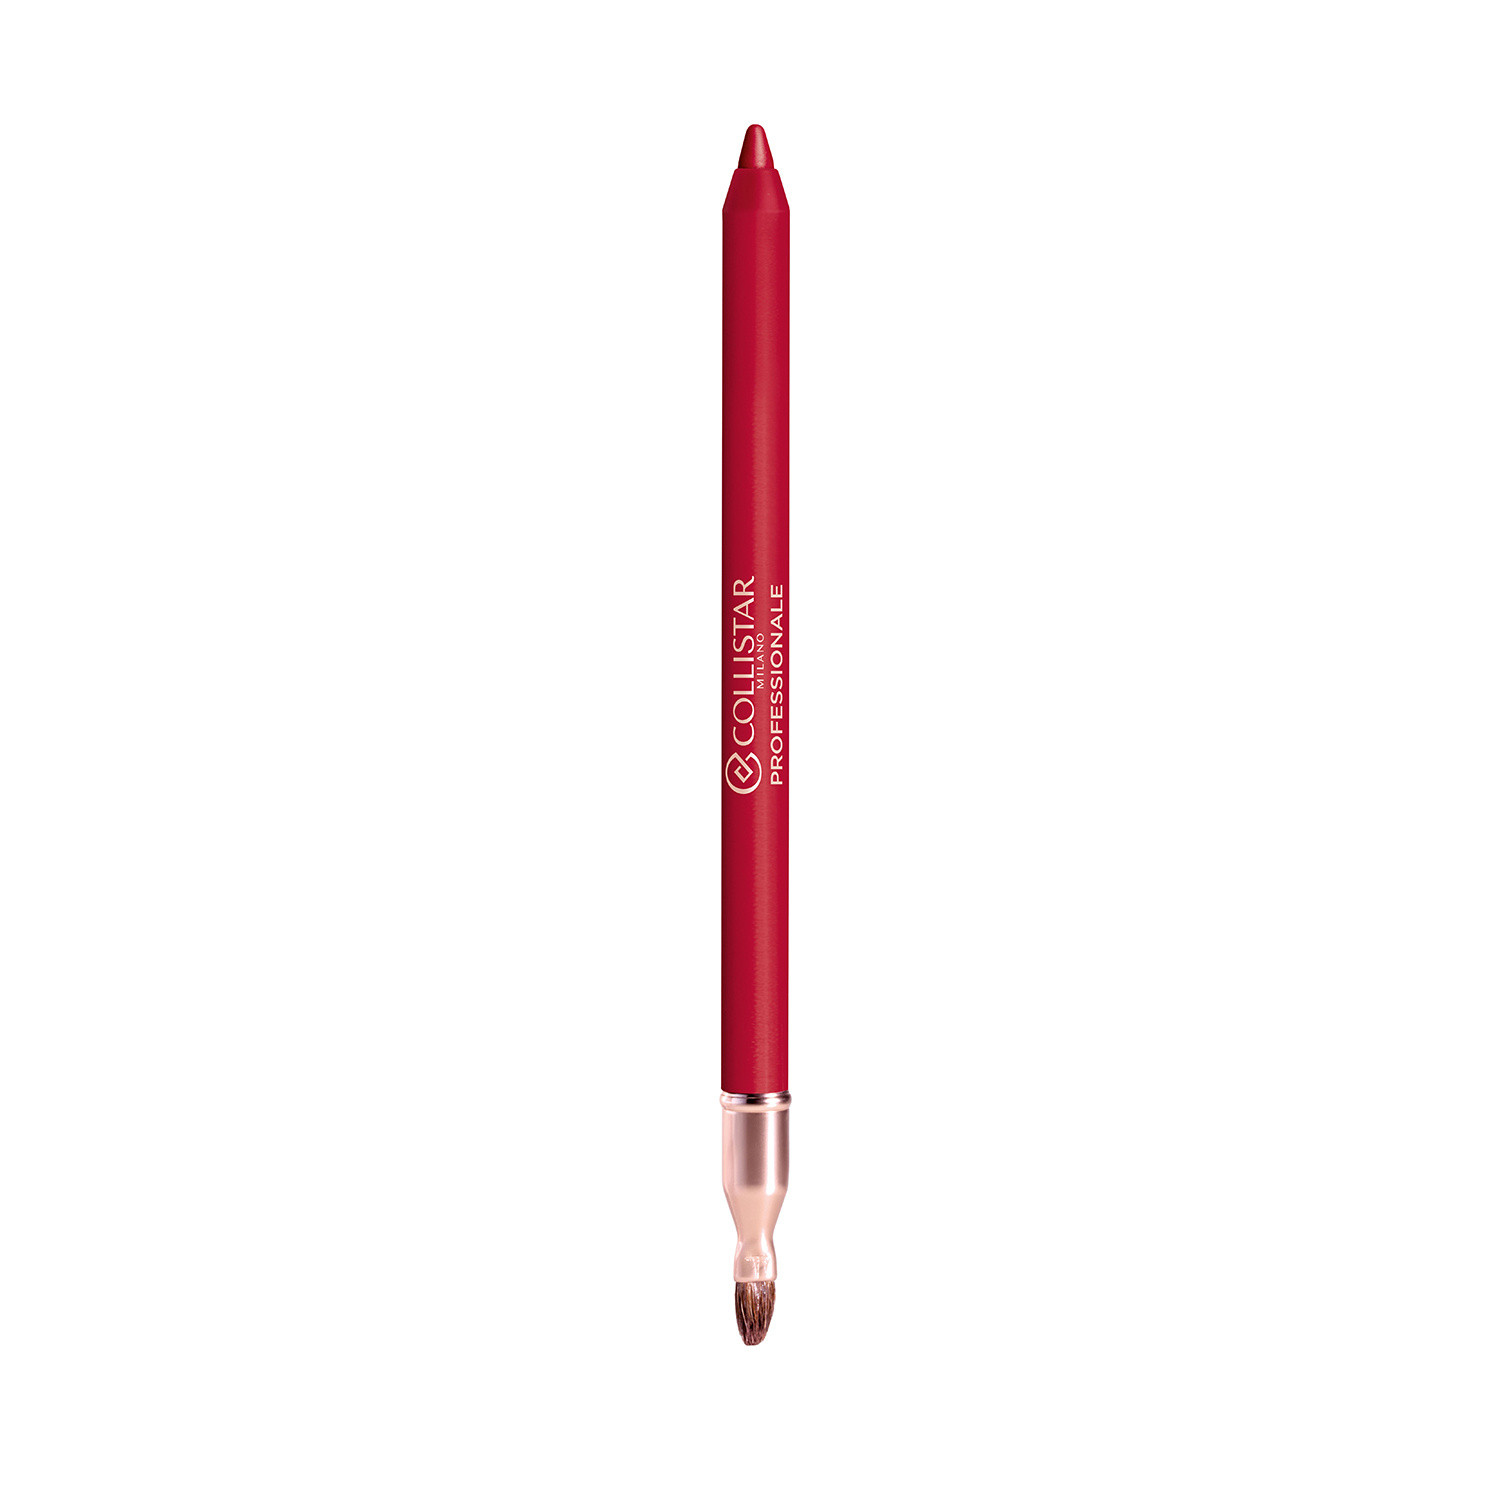 Collistar - Professionale matita labbra lunga durata - 16 Rubino, Rosso, large image number 1